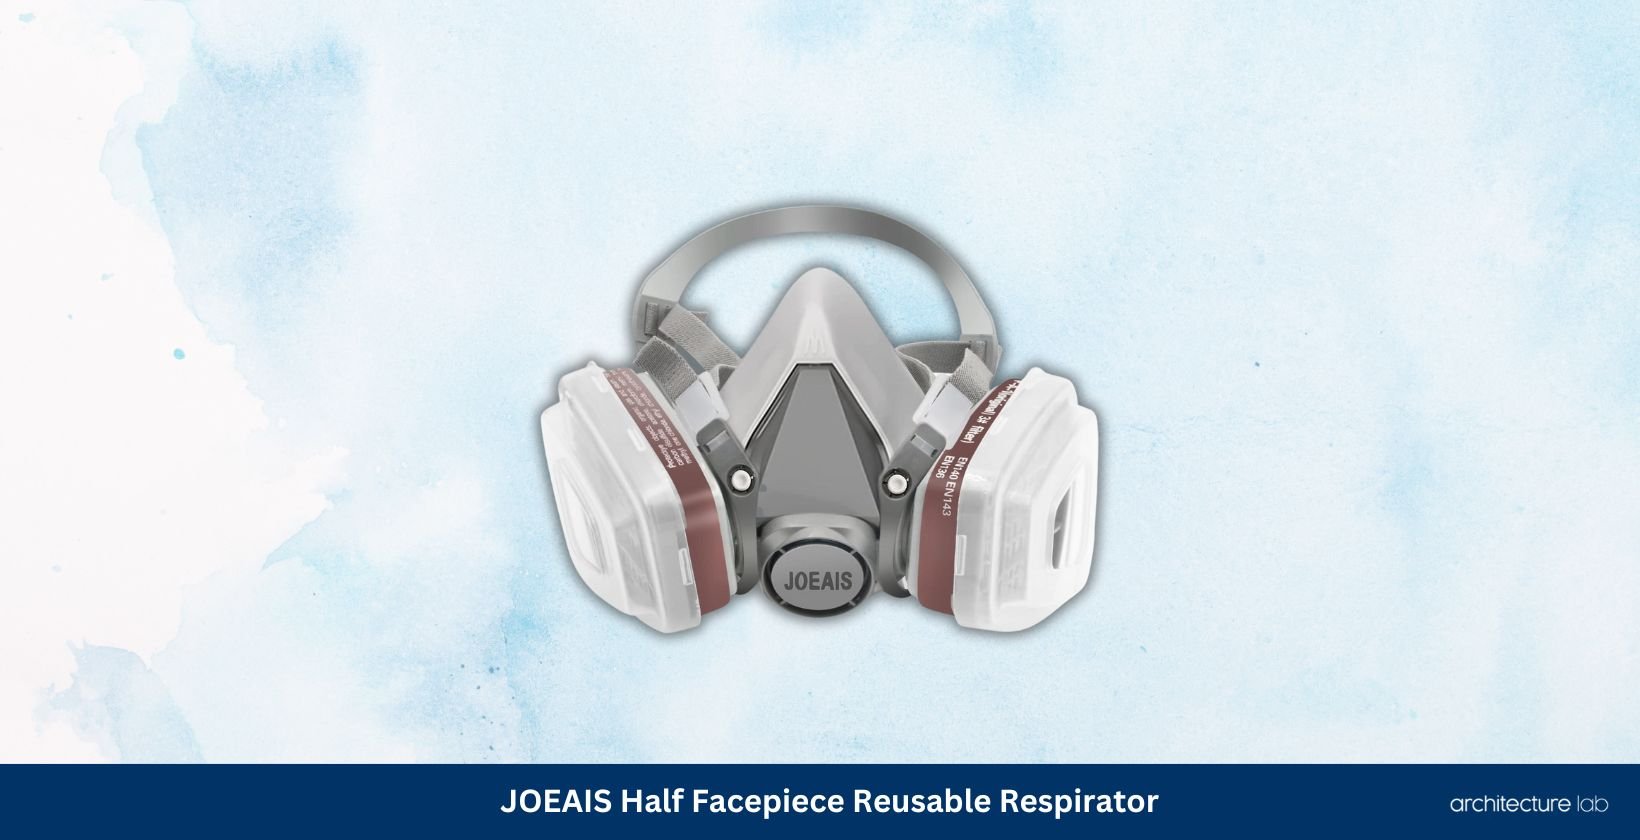 Joeais half facepiece reusable respirator